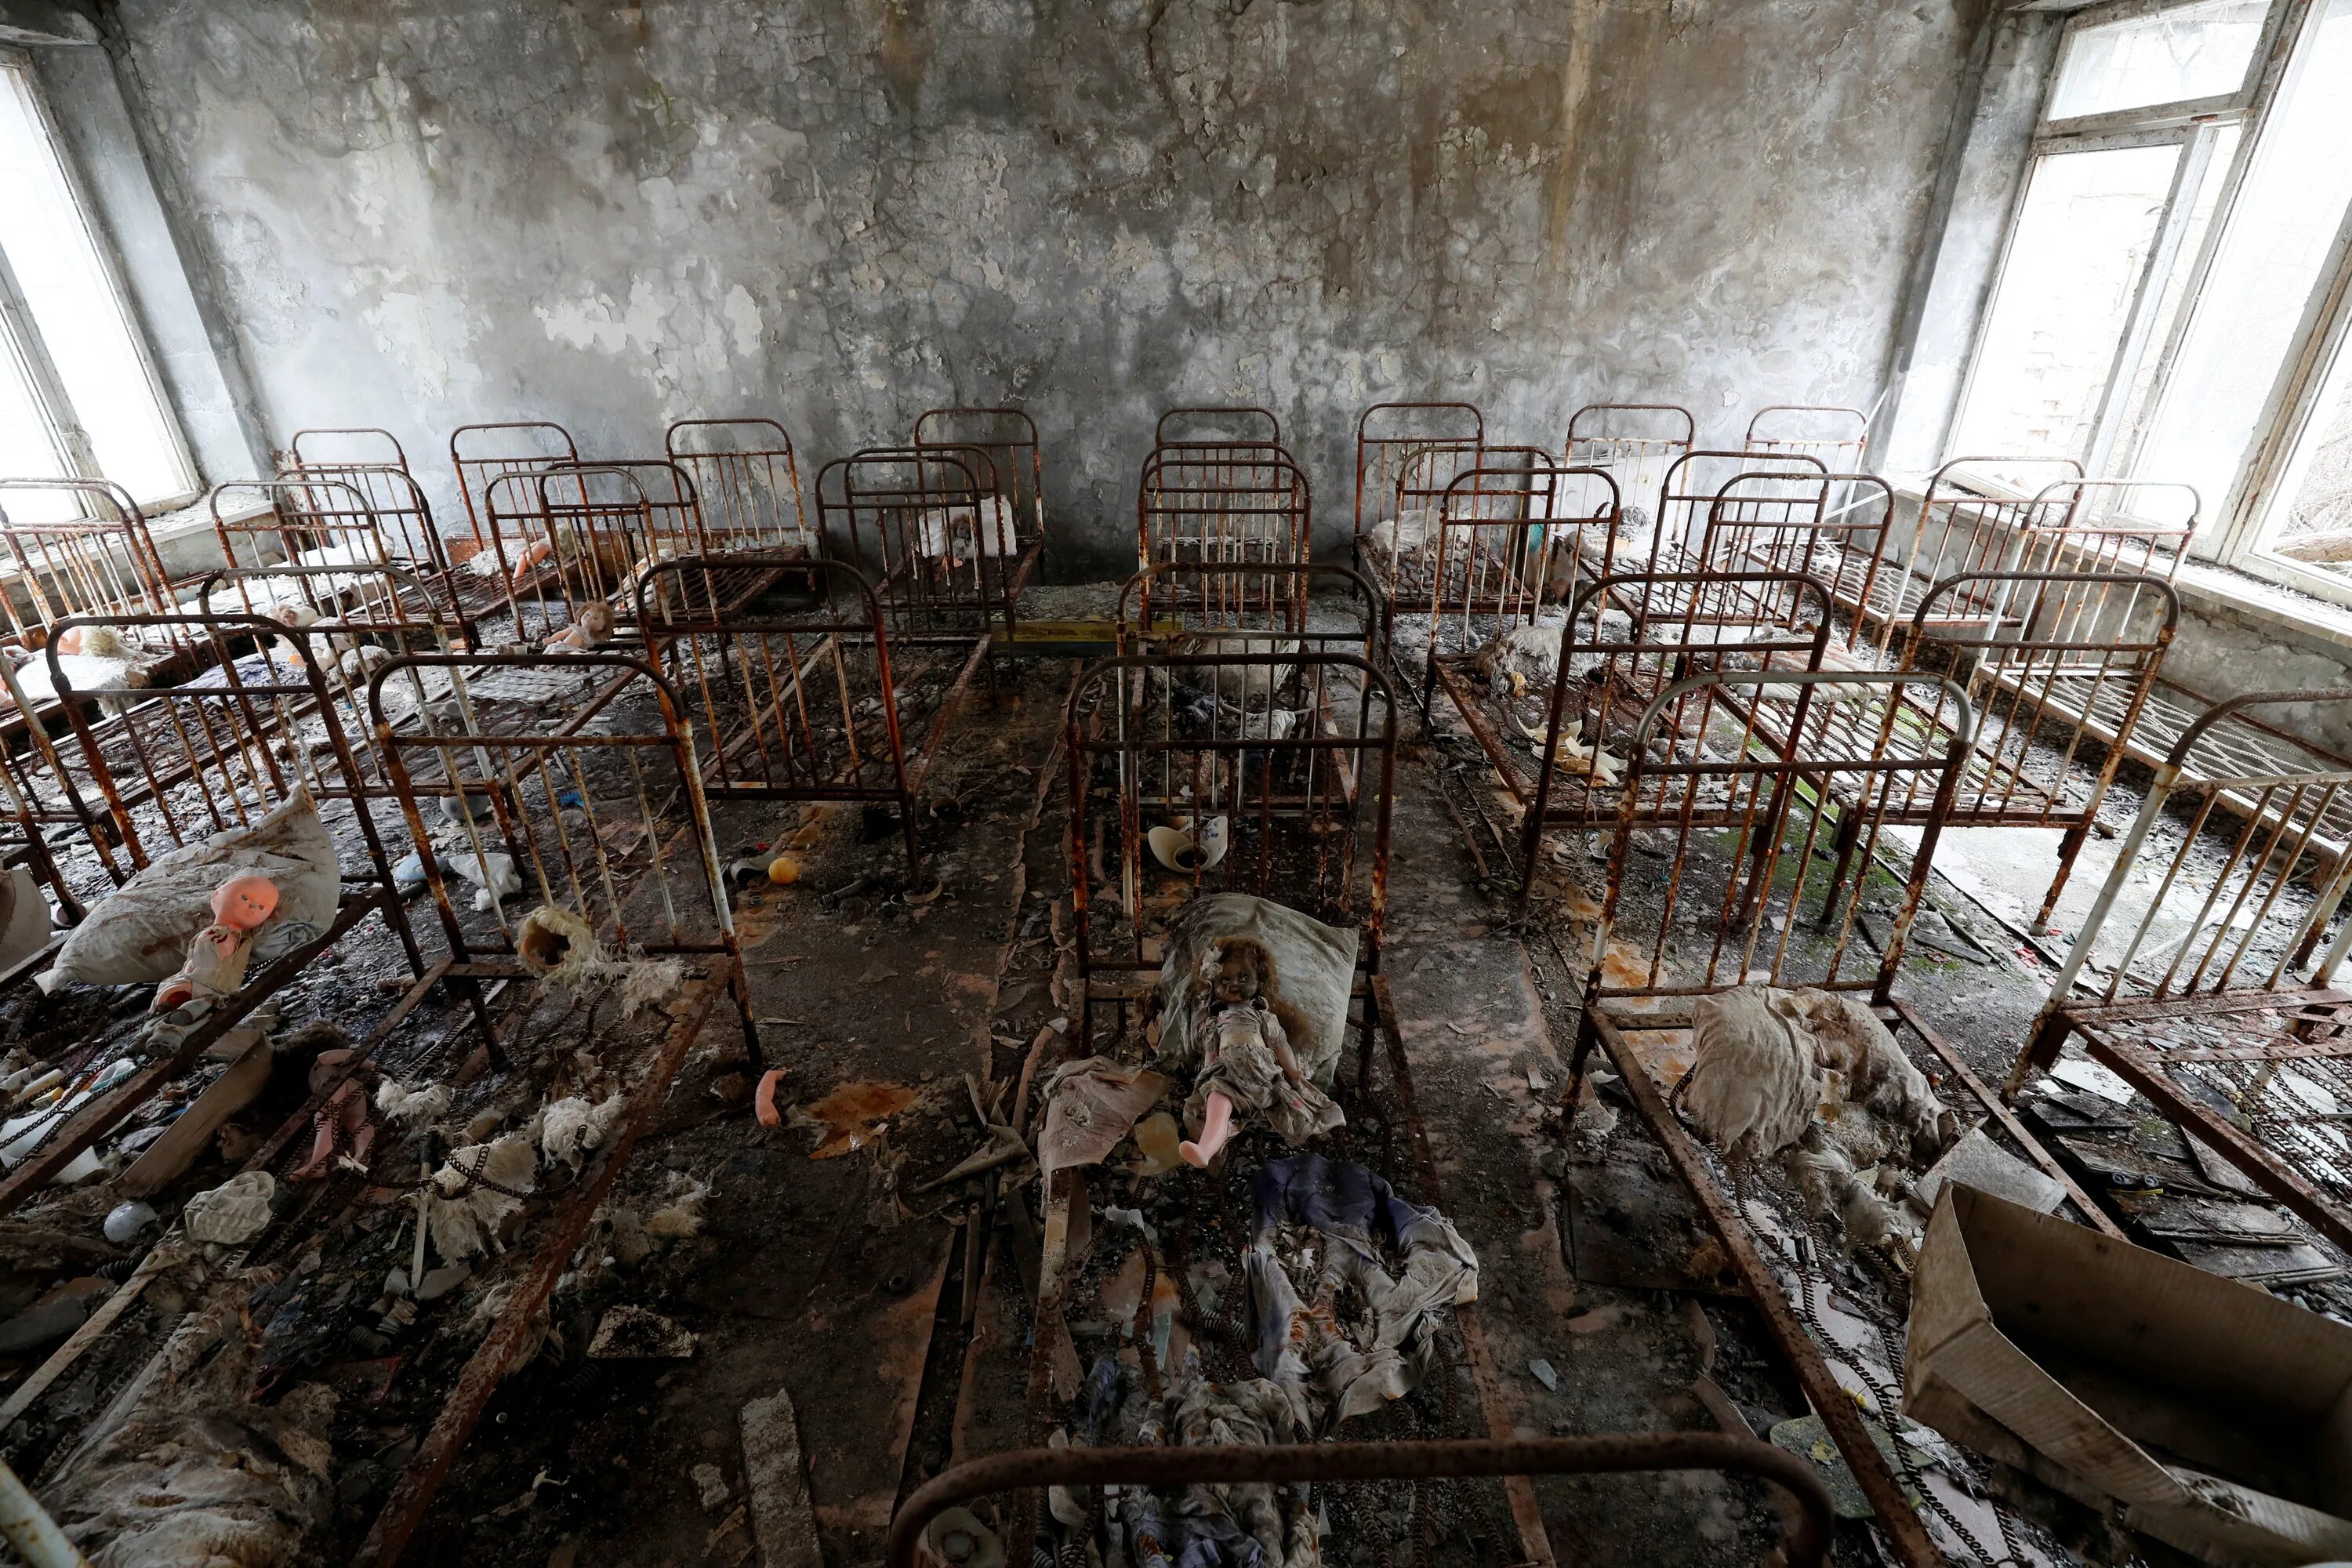 Катастрофа на аэс 1986. Чернобыль Припять 1986. Зона отчуждения Чернобыльской АЭС 1986. Припять Чернобыль авария на ЧАЭС 1986. Припять ЧАЭС 2021.